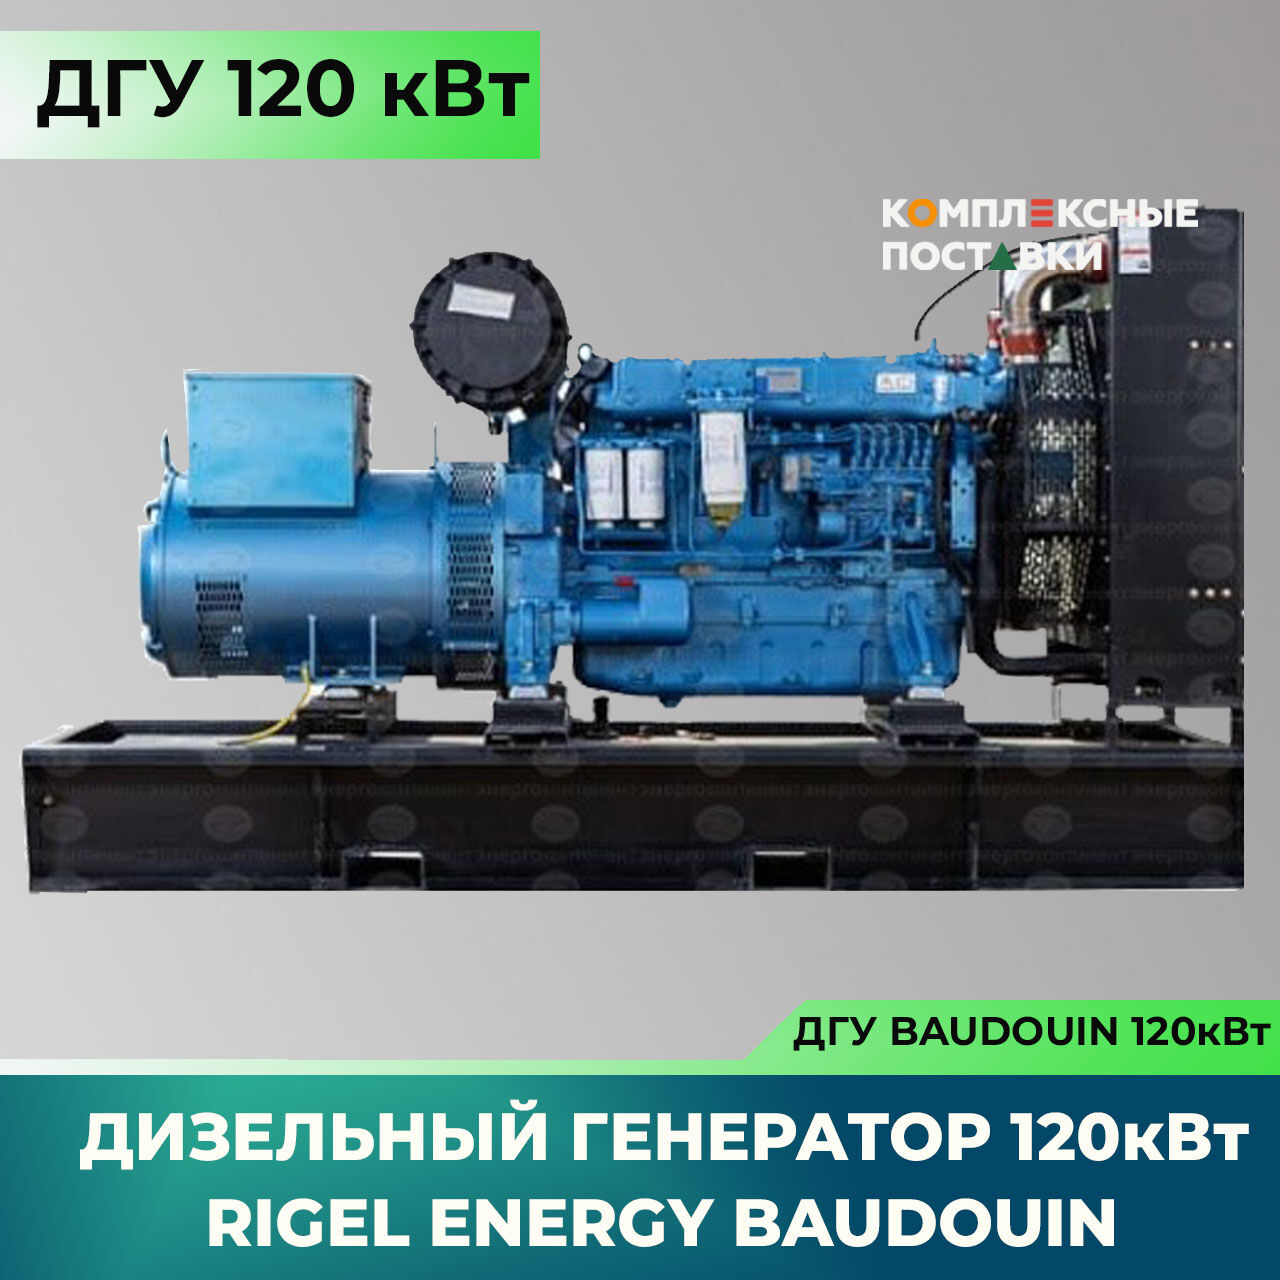 ДГУ 120кВт Baudouin Дизельный генератор Rigel Energy Baudouin REB 120 (120 кВт, Baudouin)